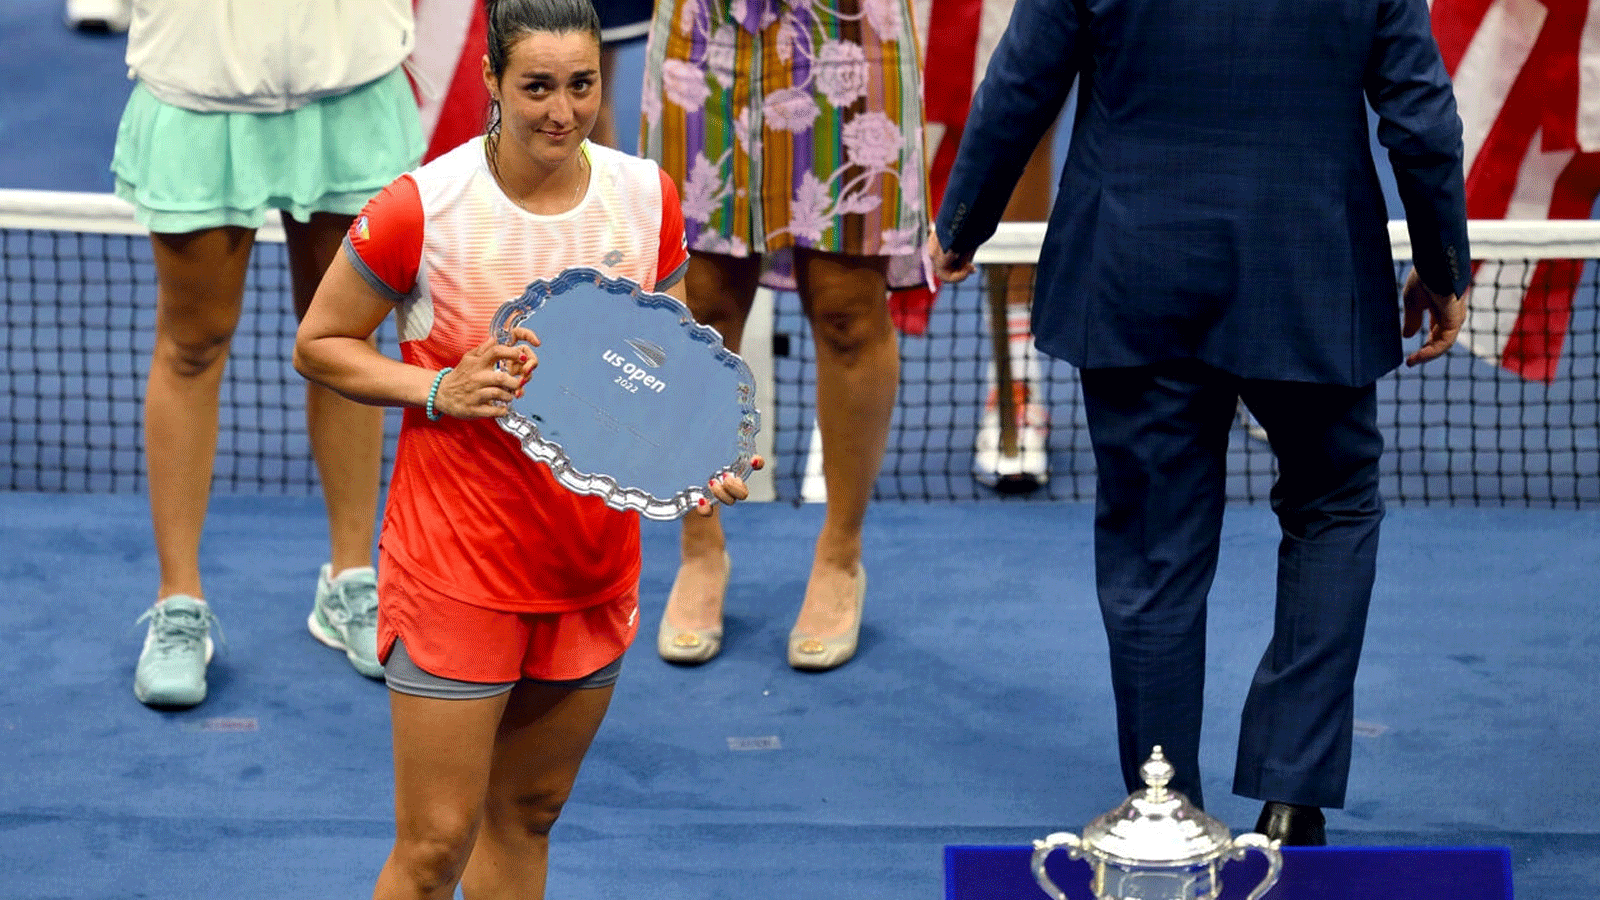 التونسية أنس جابر تحمل درع المركز الثاني لبطولة فلاشينغ ميدوز الأميركية عقب خسارتها أمام البولندية إيغا شفيونتيك في نيويورك في 10 أيلول/سبتمبر 2022